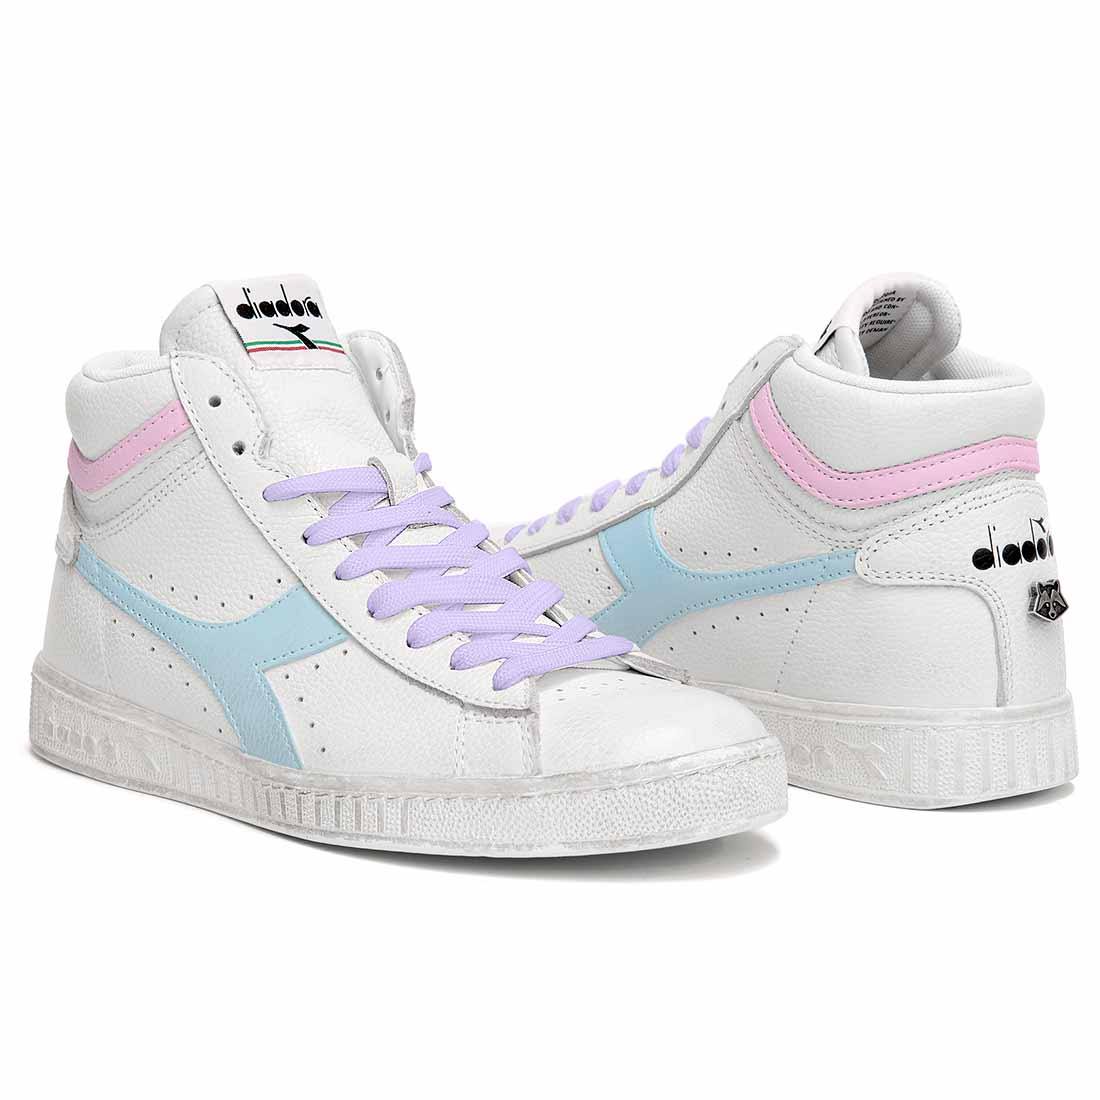 sneakers colori azzurro e rosa pastello e lacci viola